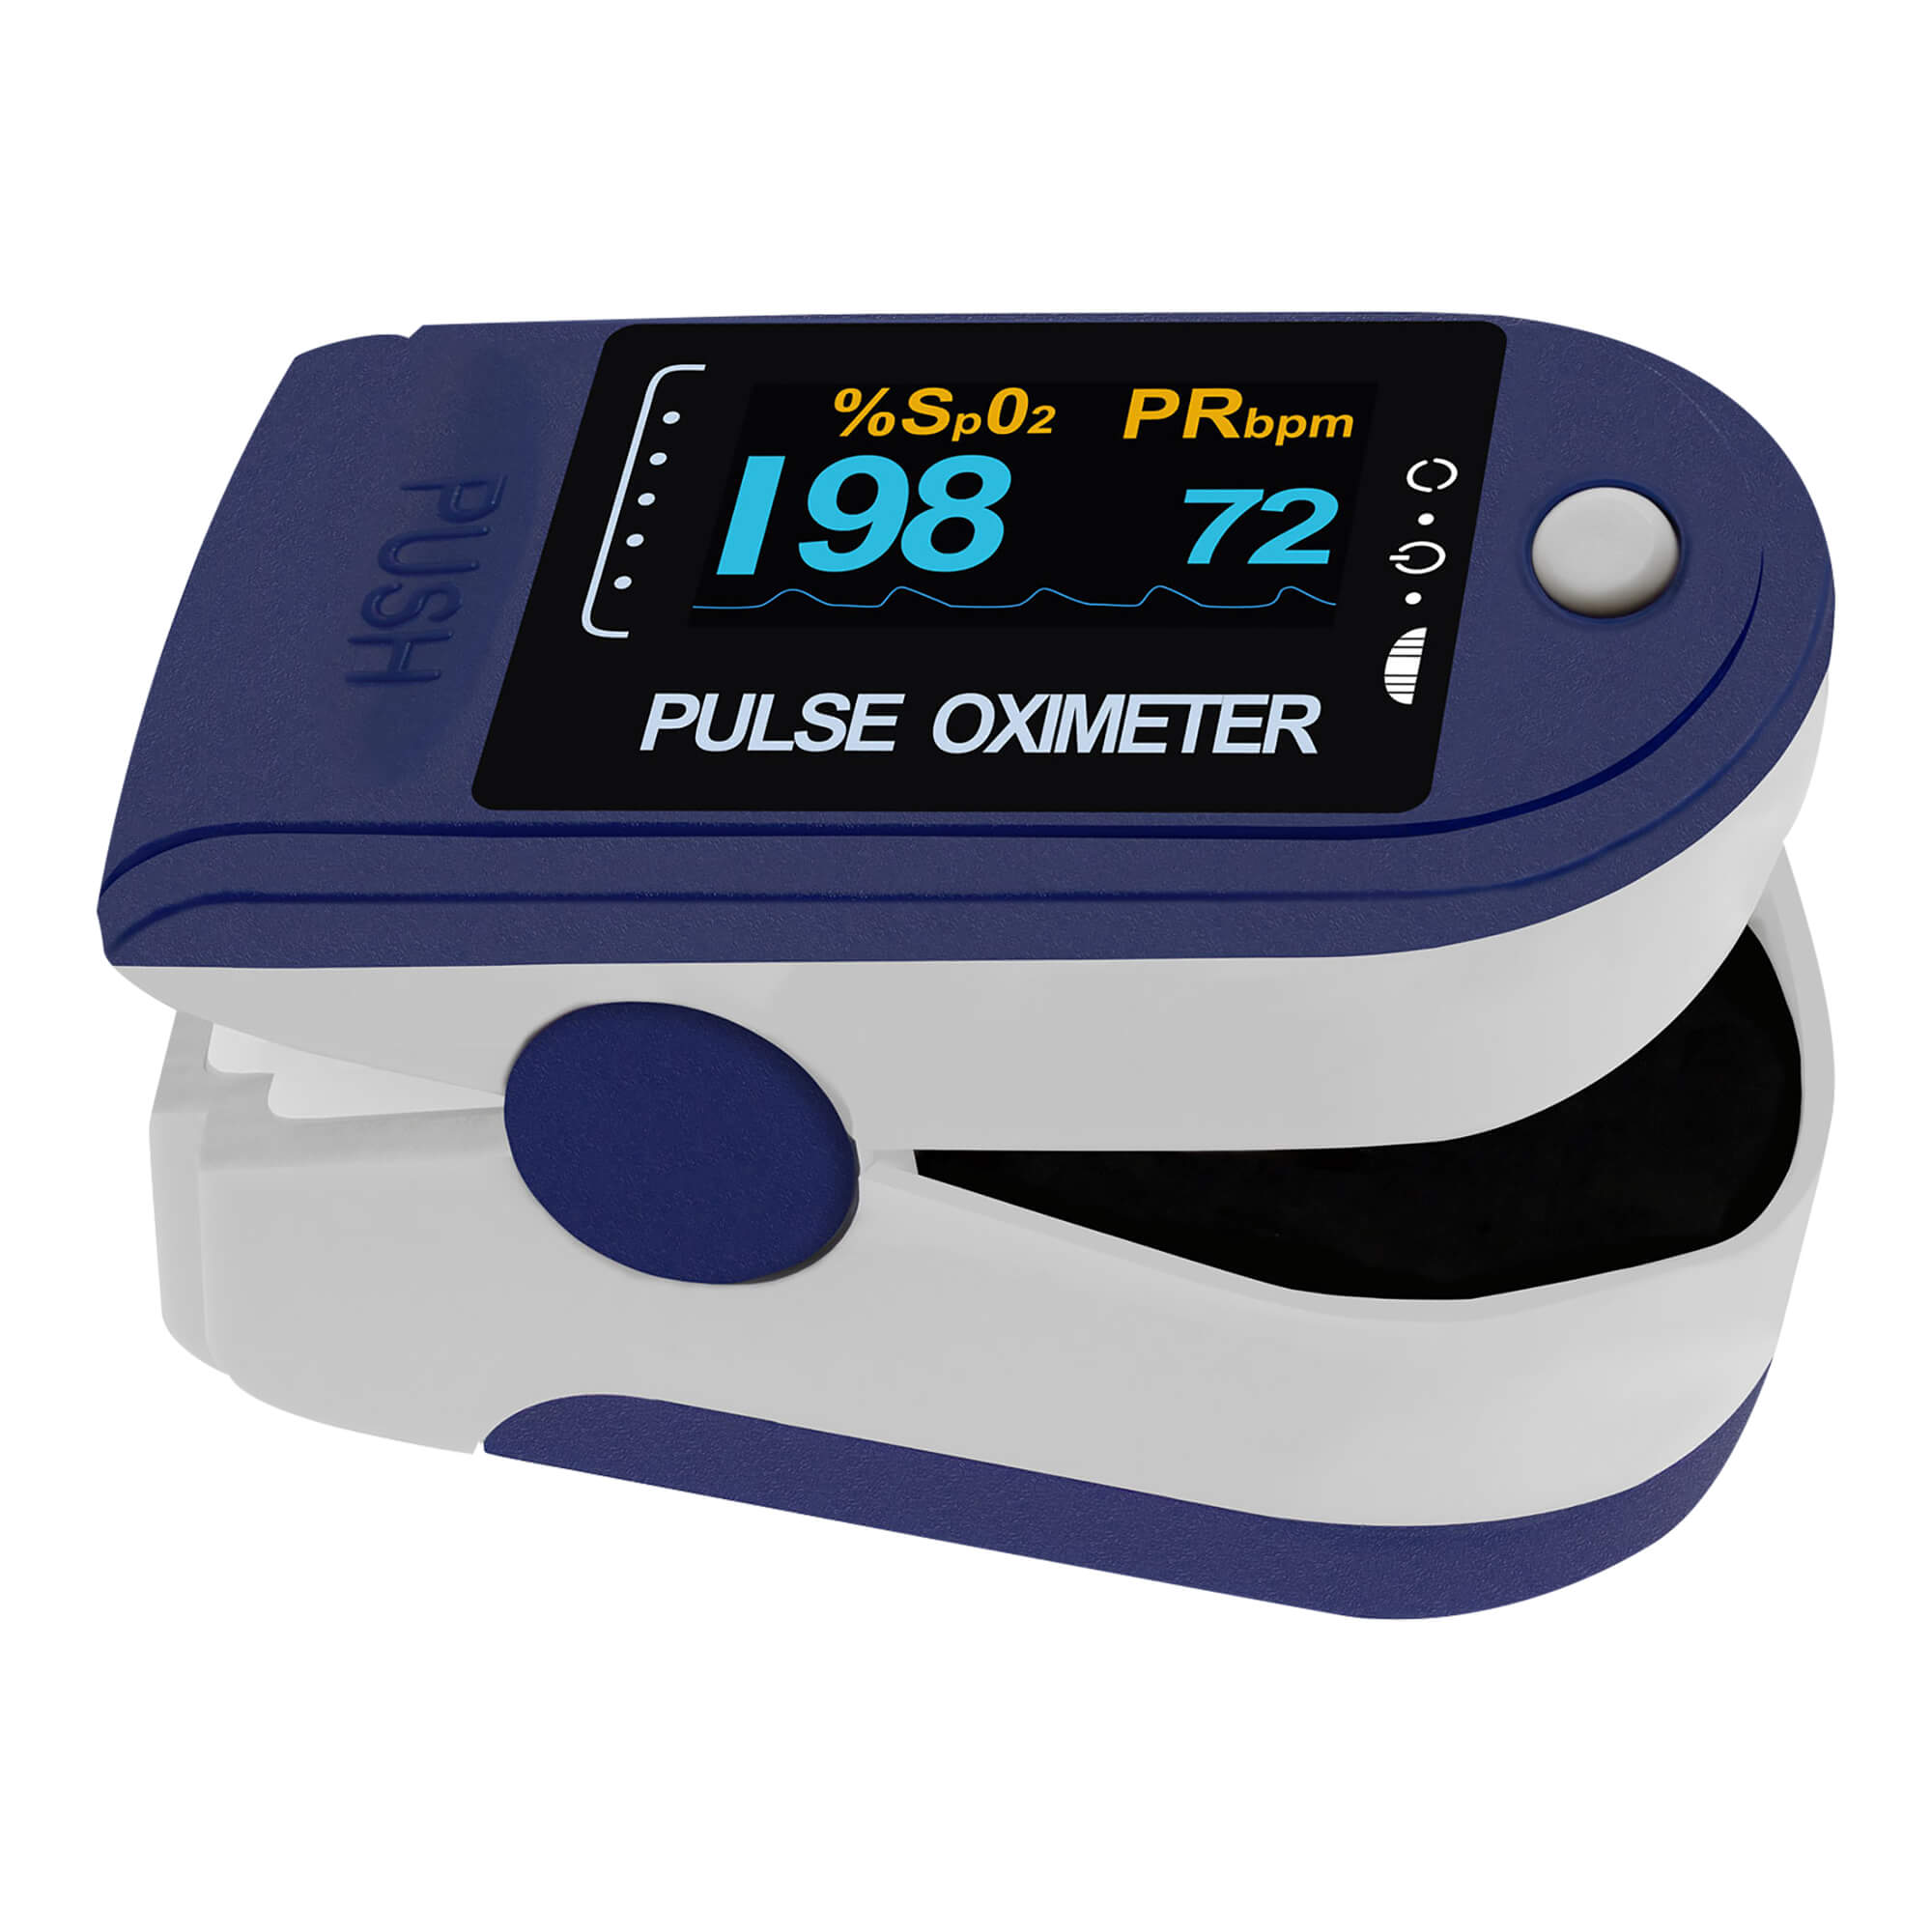 Finger-Pulsoximeter. Mit zweifarbigem OLED-Display, Batterien und Zubehör. Farbe: blau.